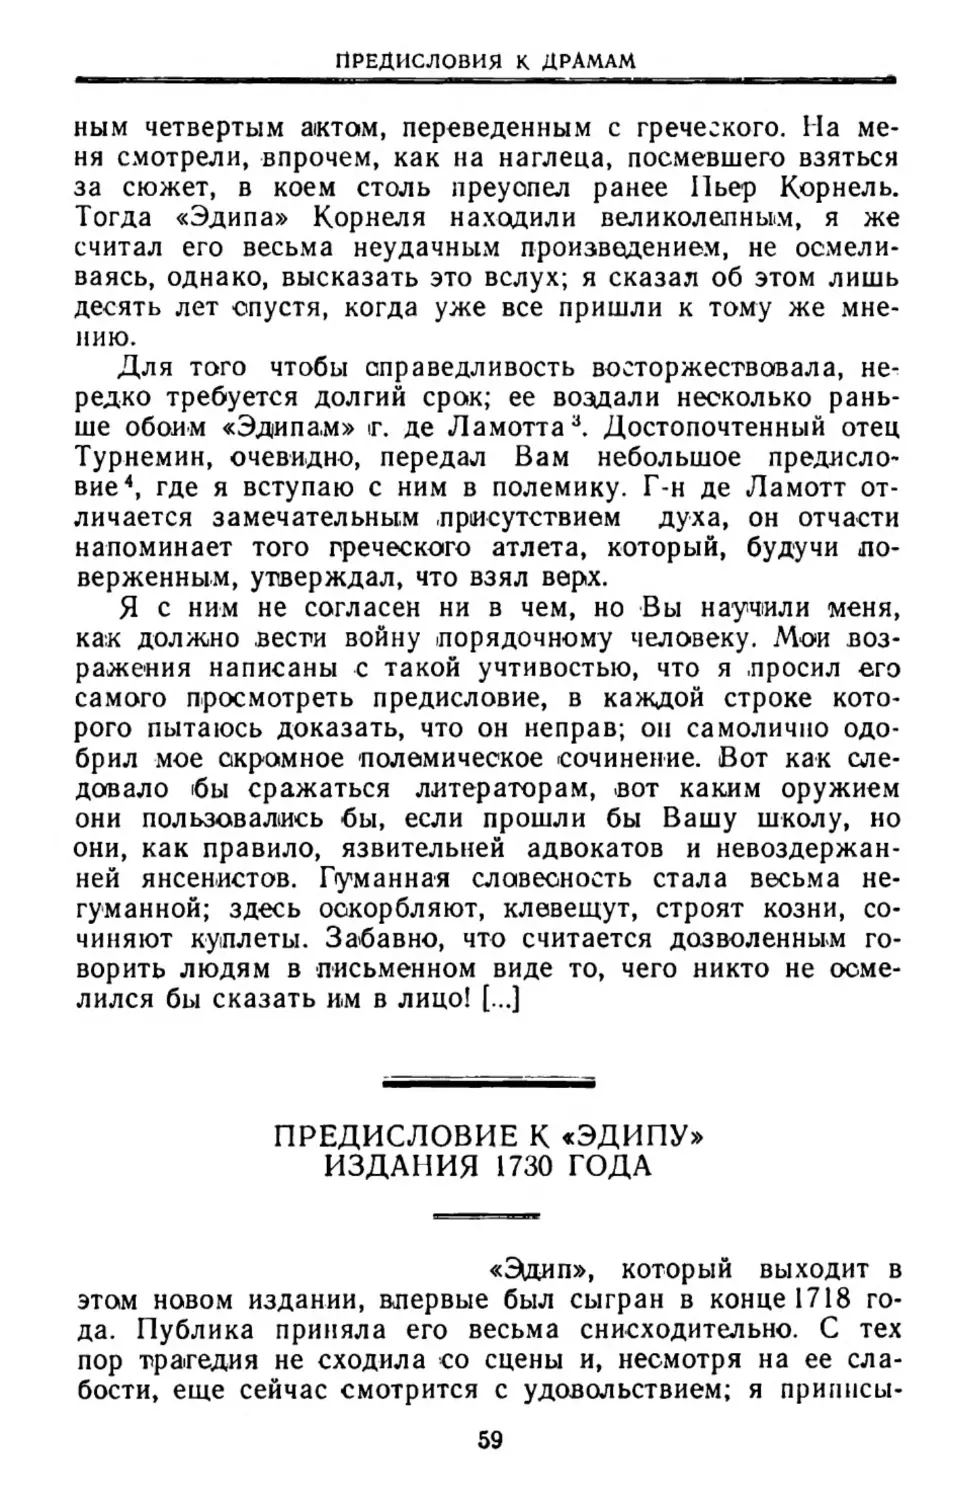 Предисловие к «Эдипу» издания 1730 года. Пер. Л. Зониной